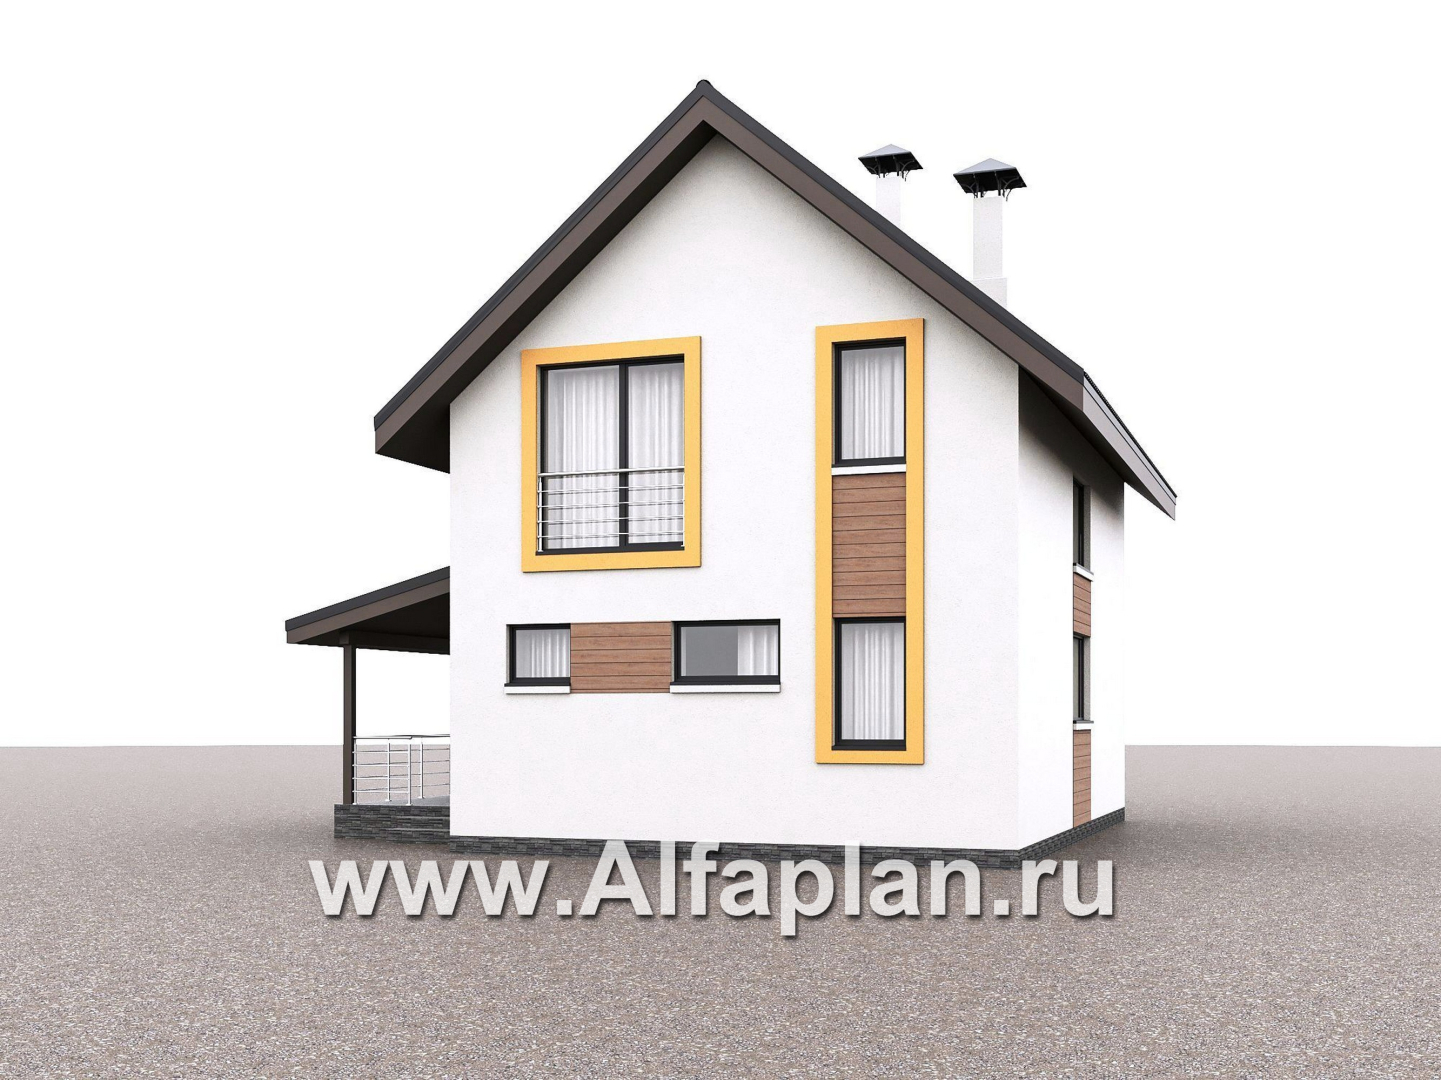 «Викинг» - проект дома, 2 этажа, с сауной и с террасой сбоку, в скандинавском стиле - дизайн дома №1